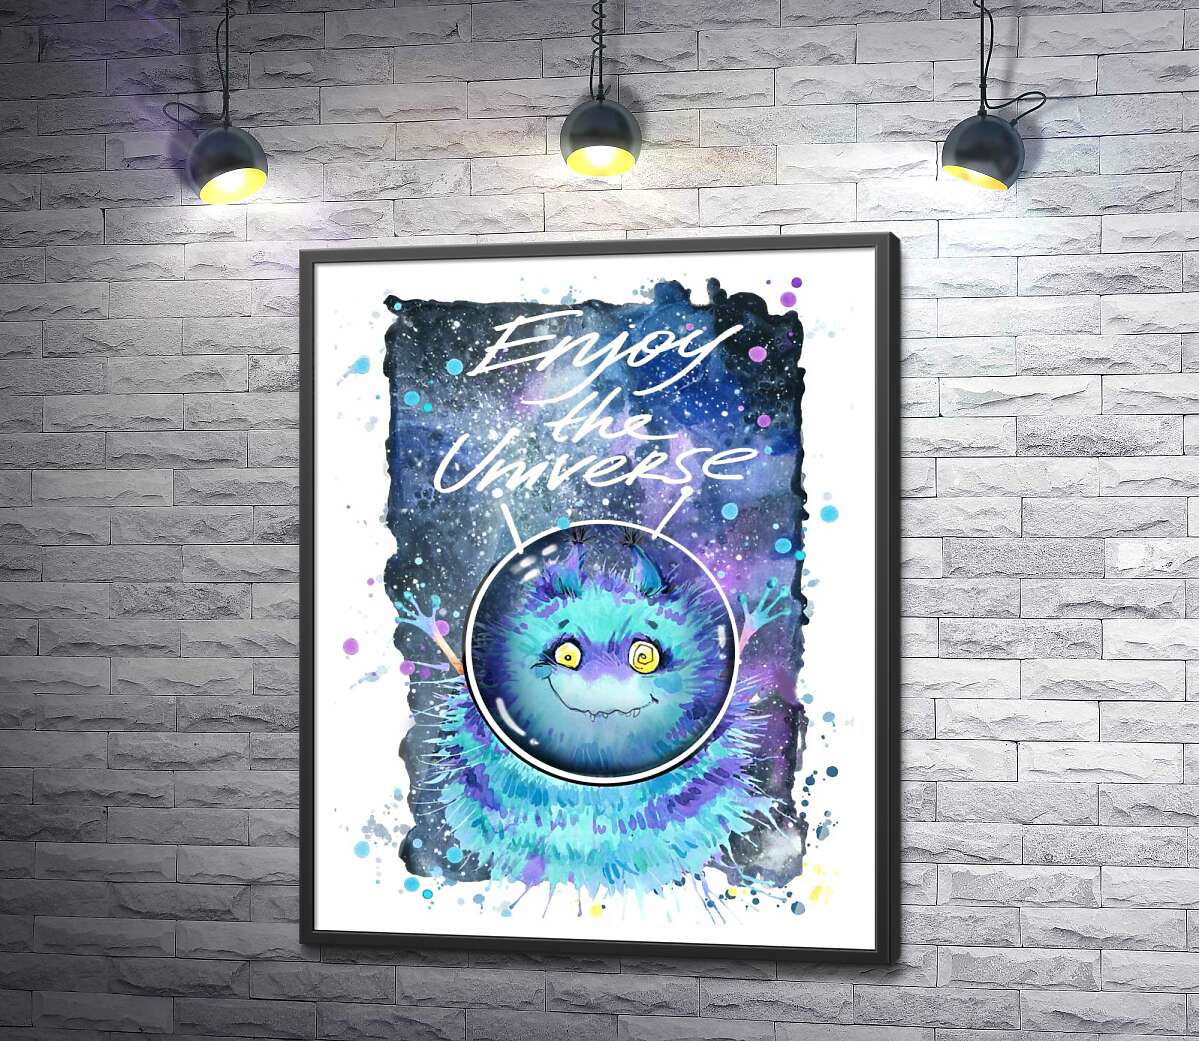 постер Монстр с голубой шерстью летает в космосе с надписью "Enjoy the Universe"